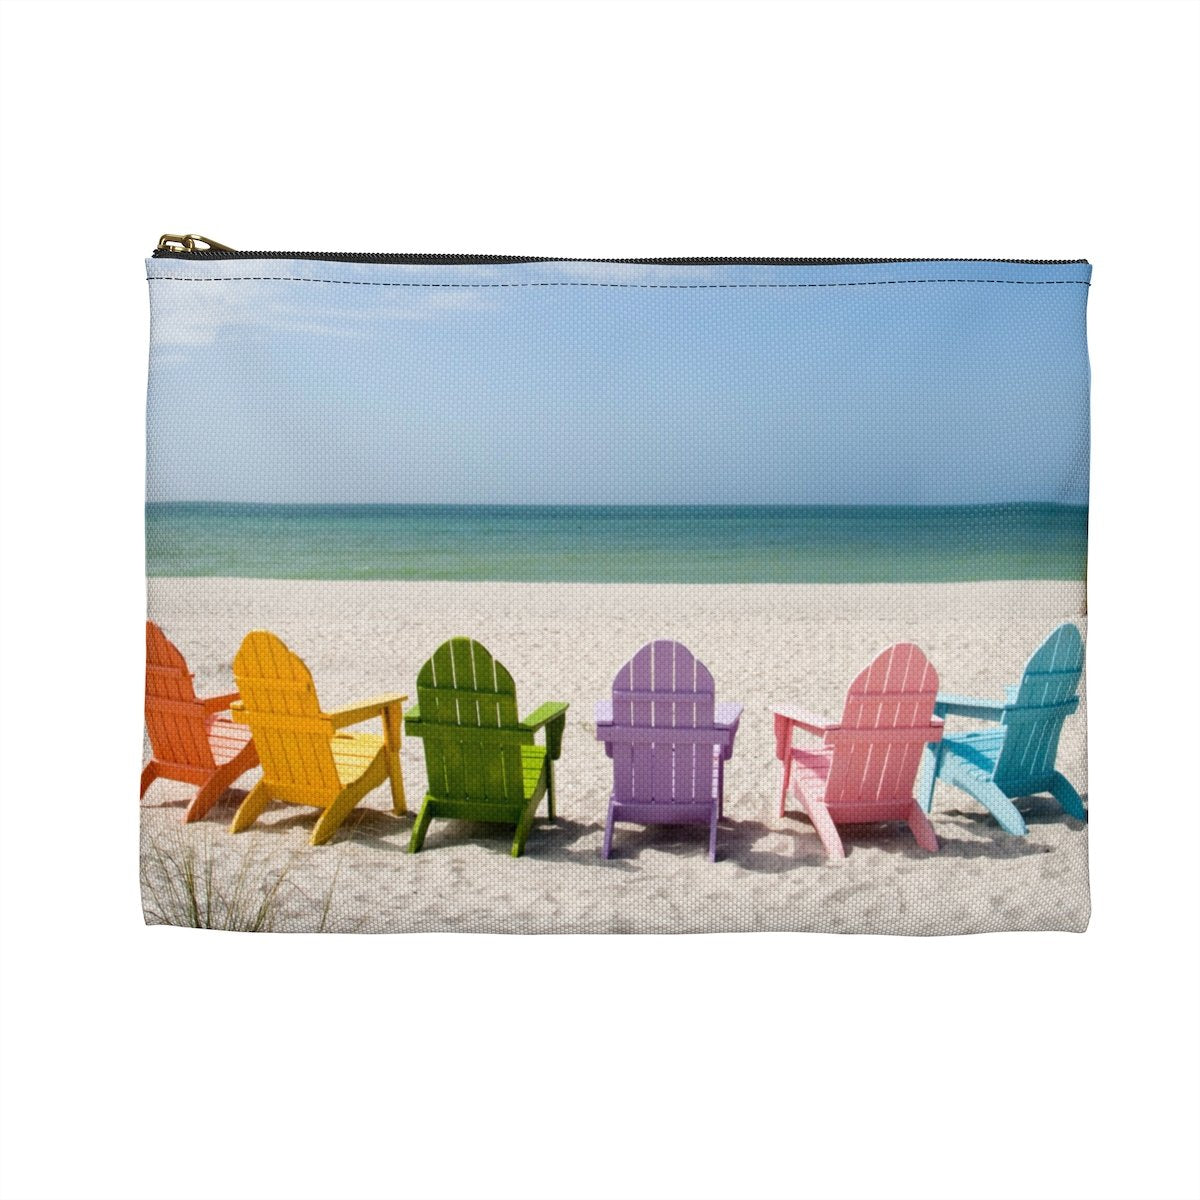 the beach pouch